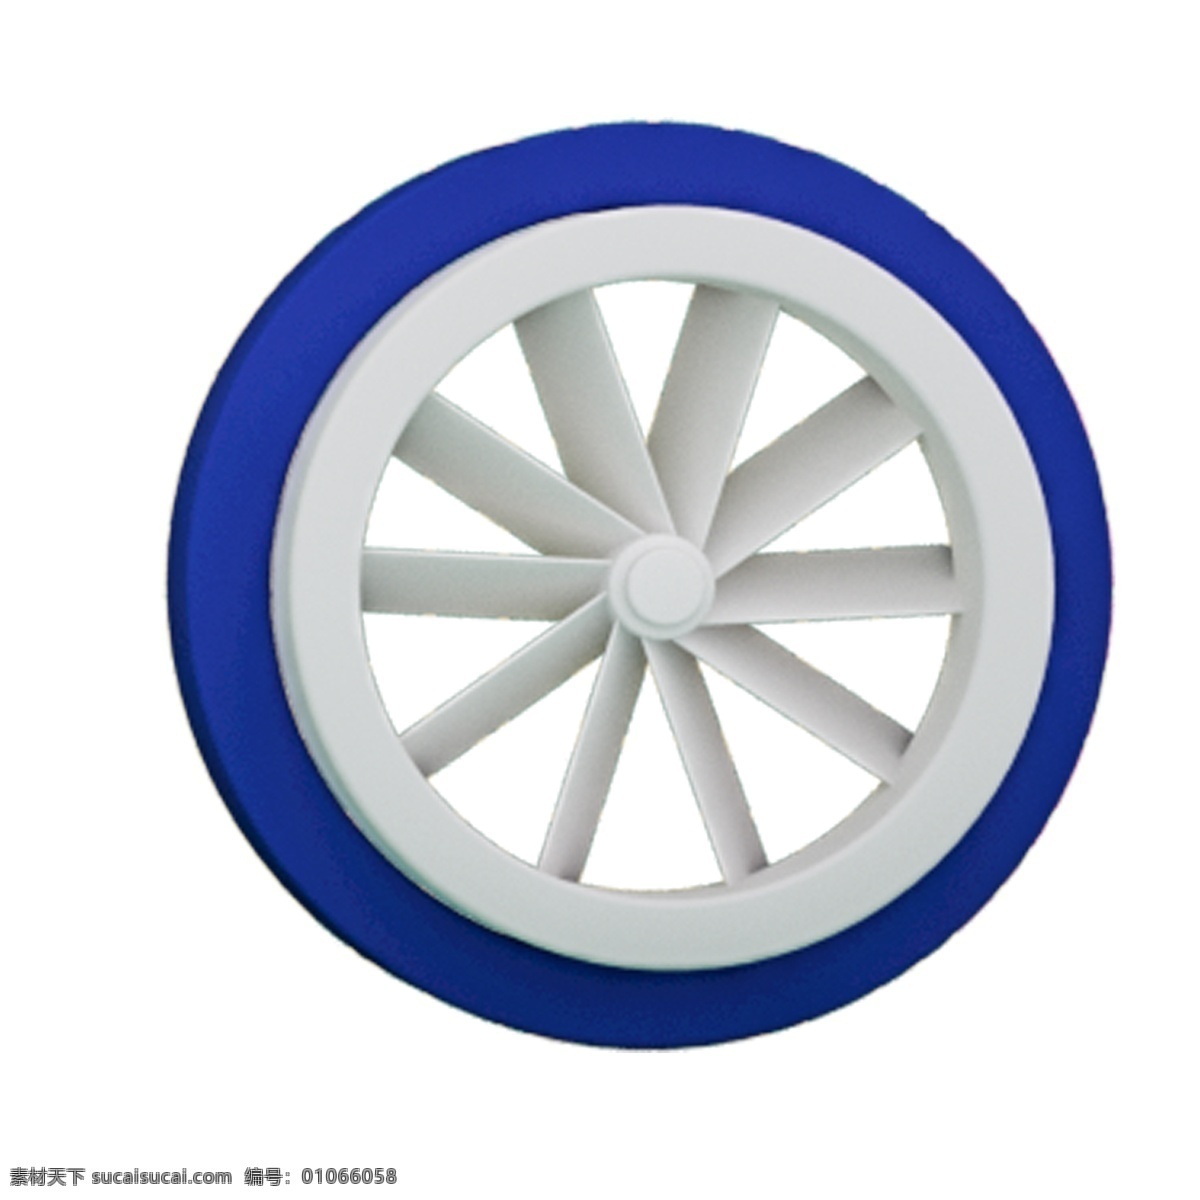 一个 蓝色 创意 轮子 免 抠 图 轮胎 风扇 免抠图 蓝色轮子 装饰品 装饰物